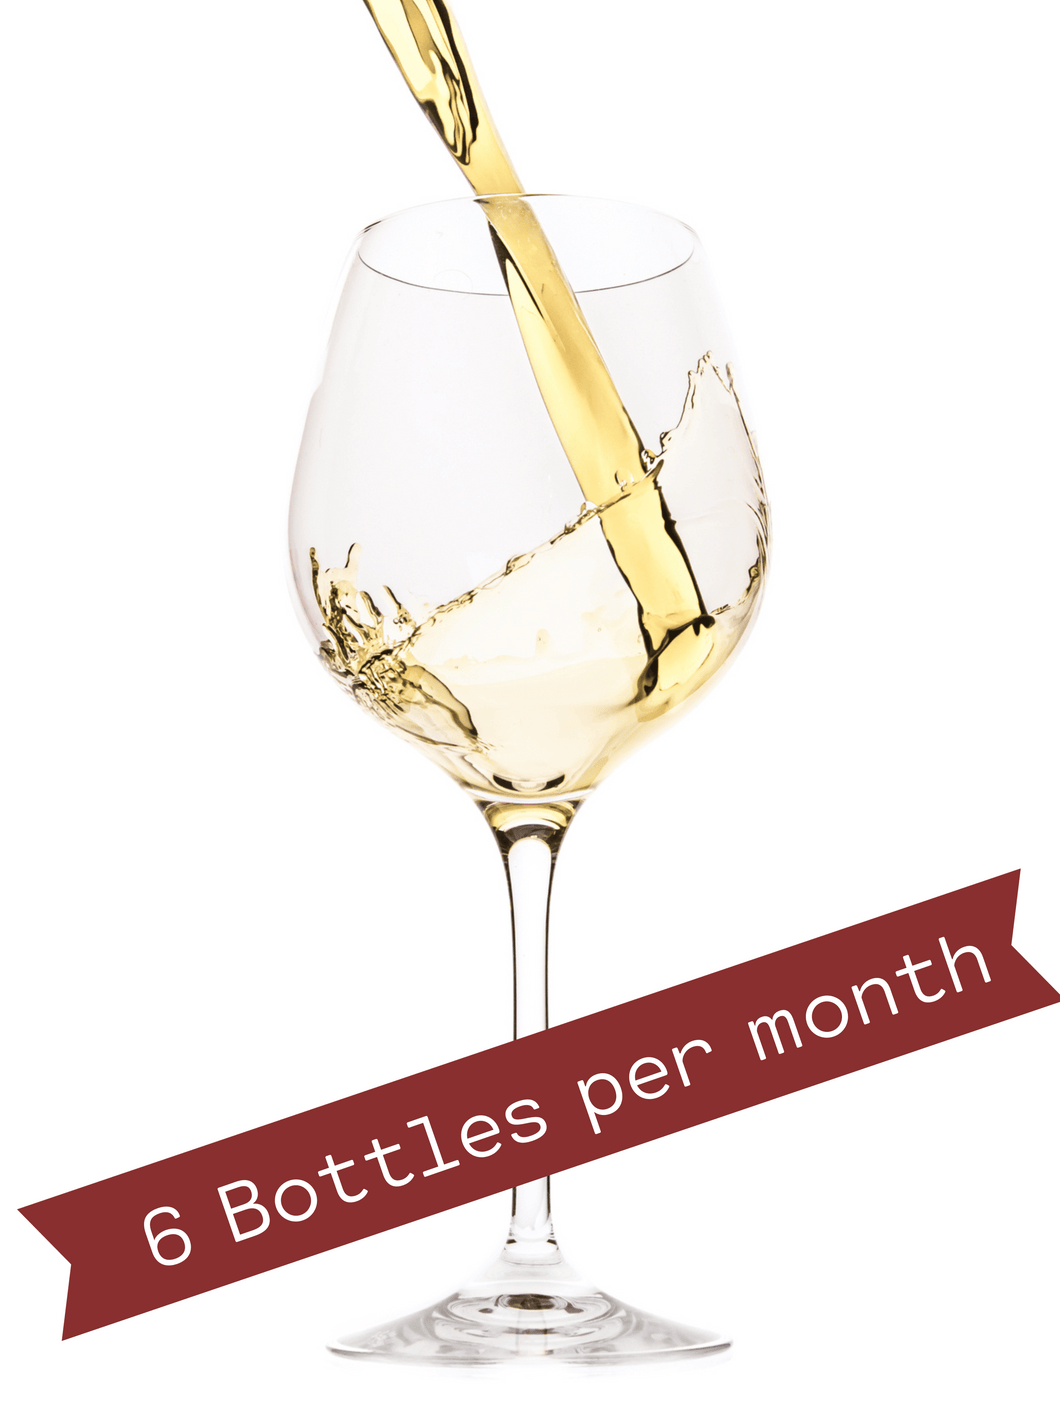 Wine Club (6 Bottles / Month)